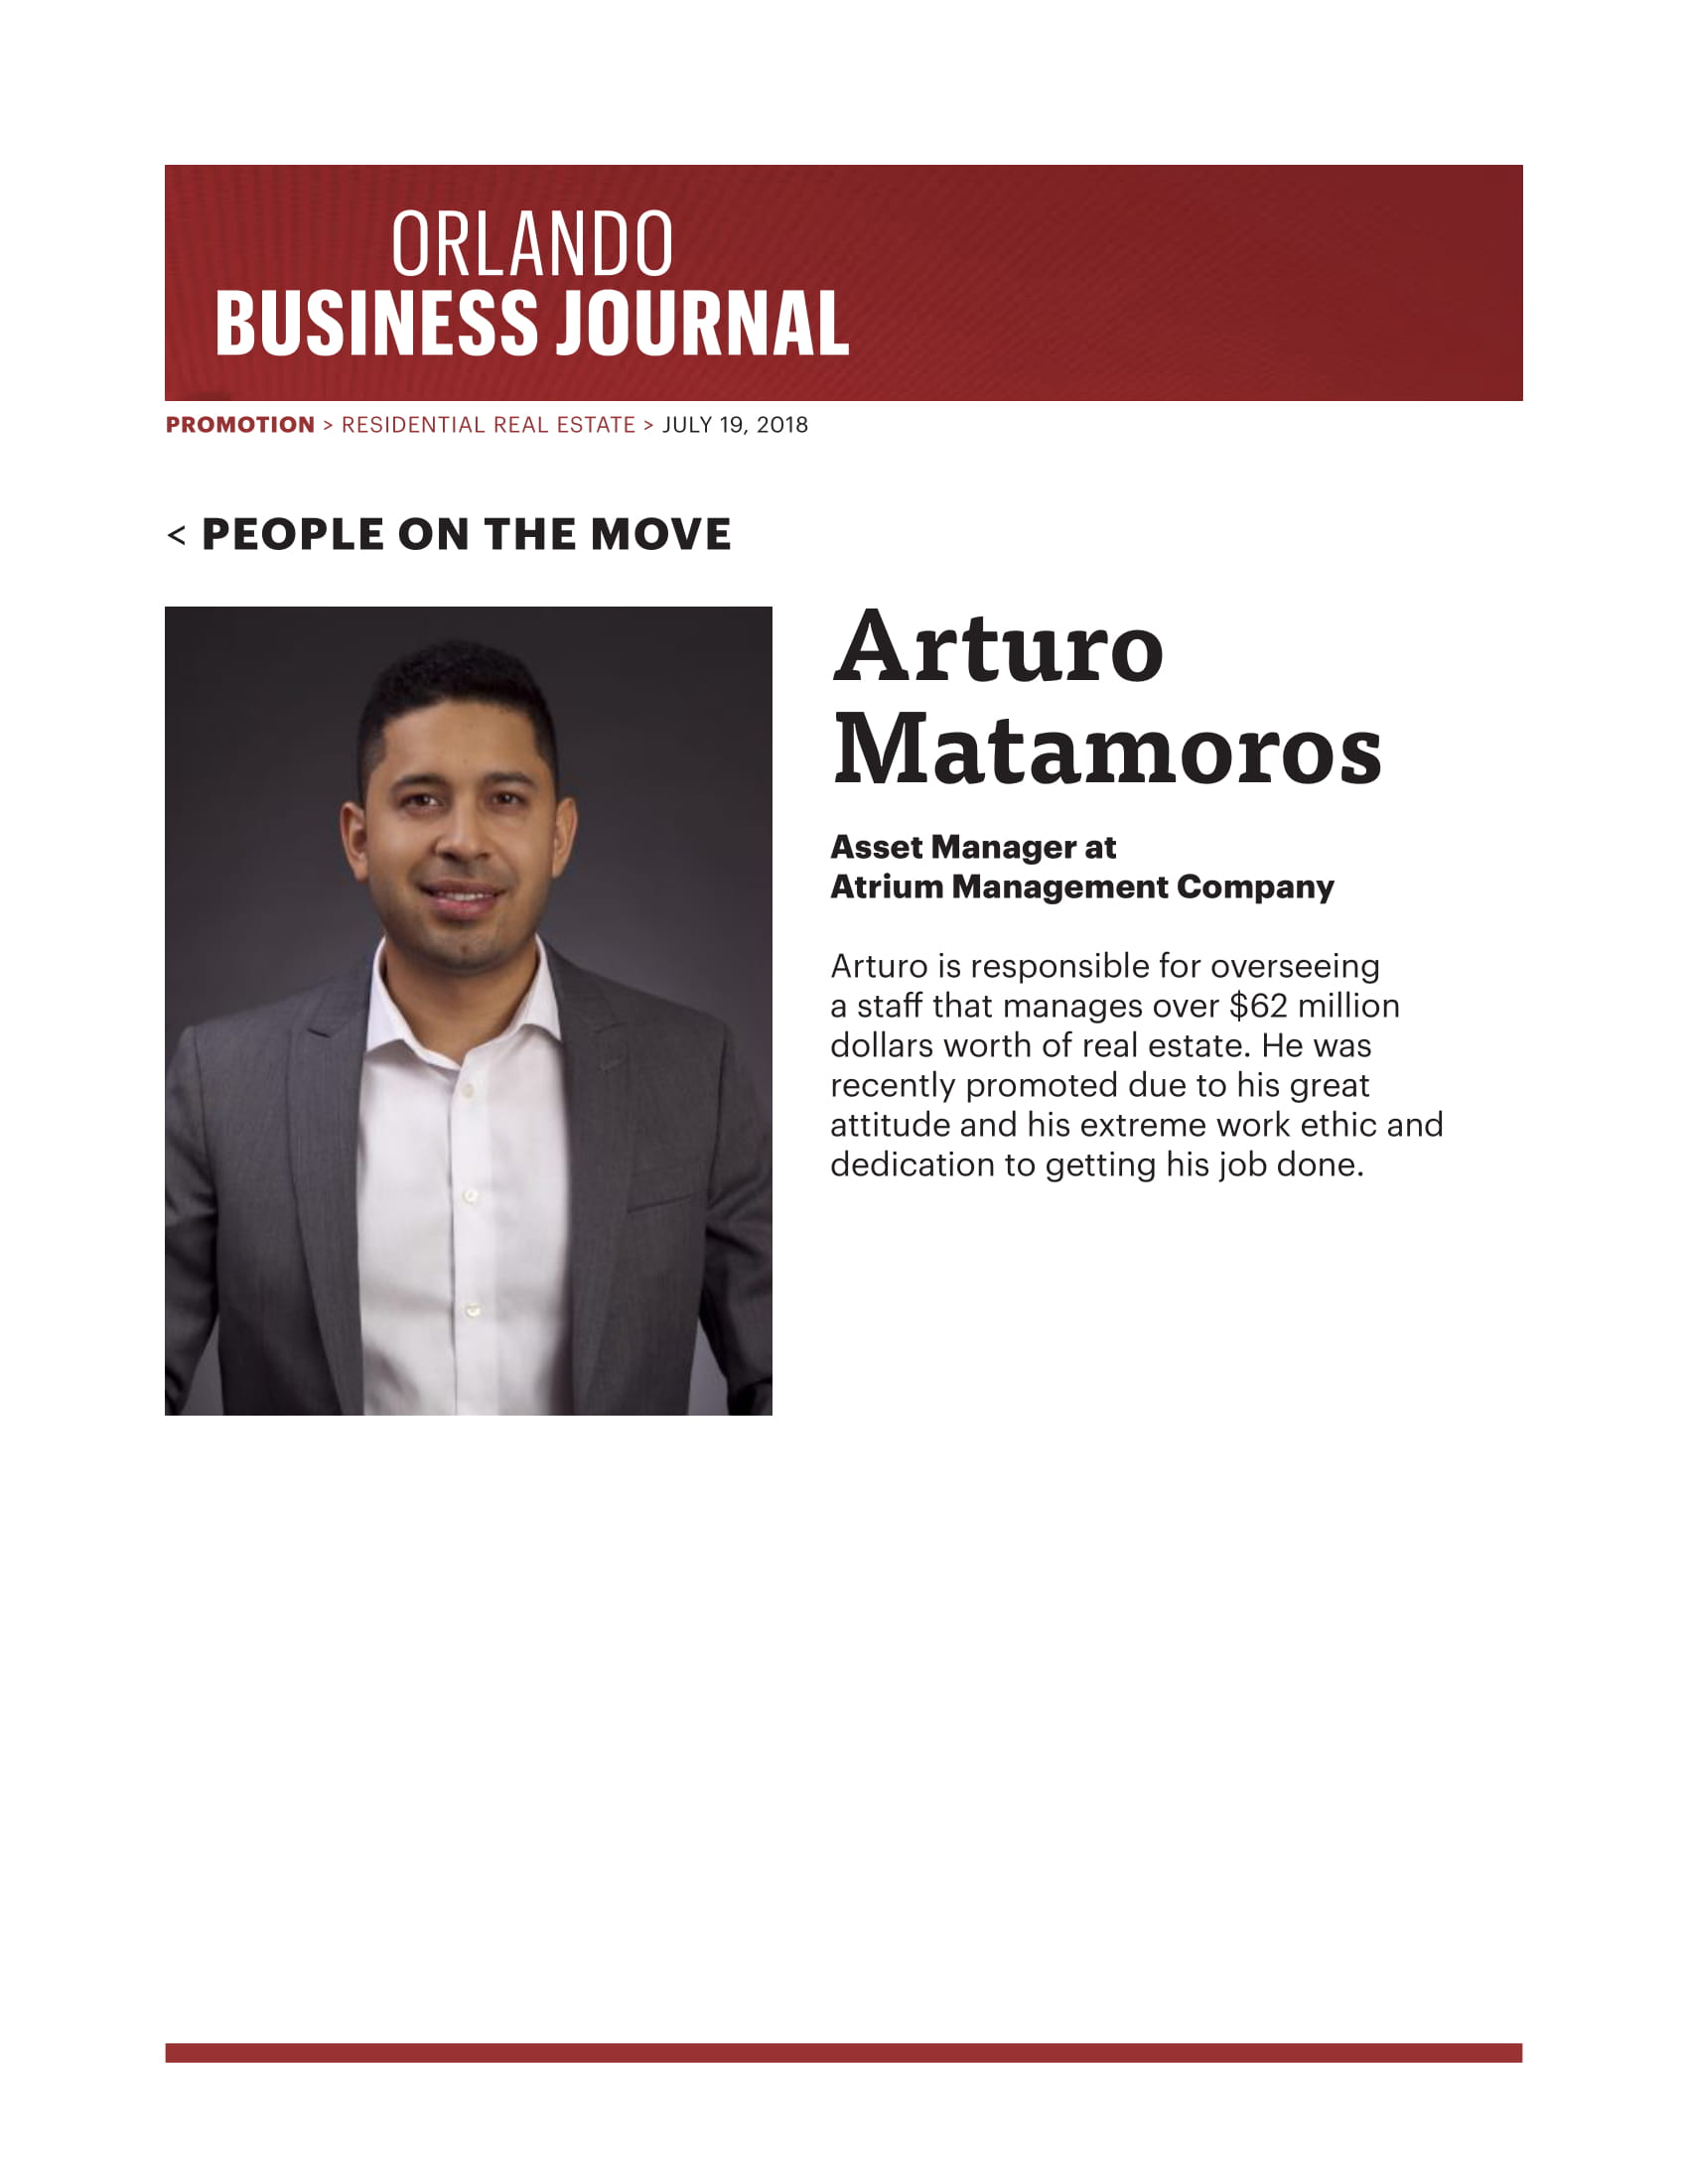 Arturo Matamoros: Asset Manager at Atrium Management Company